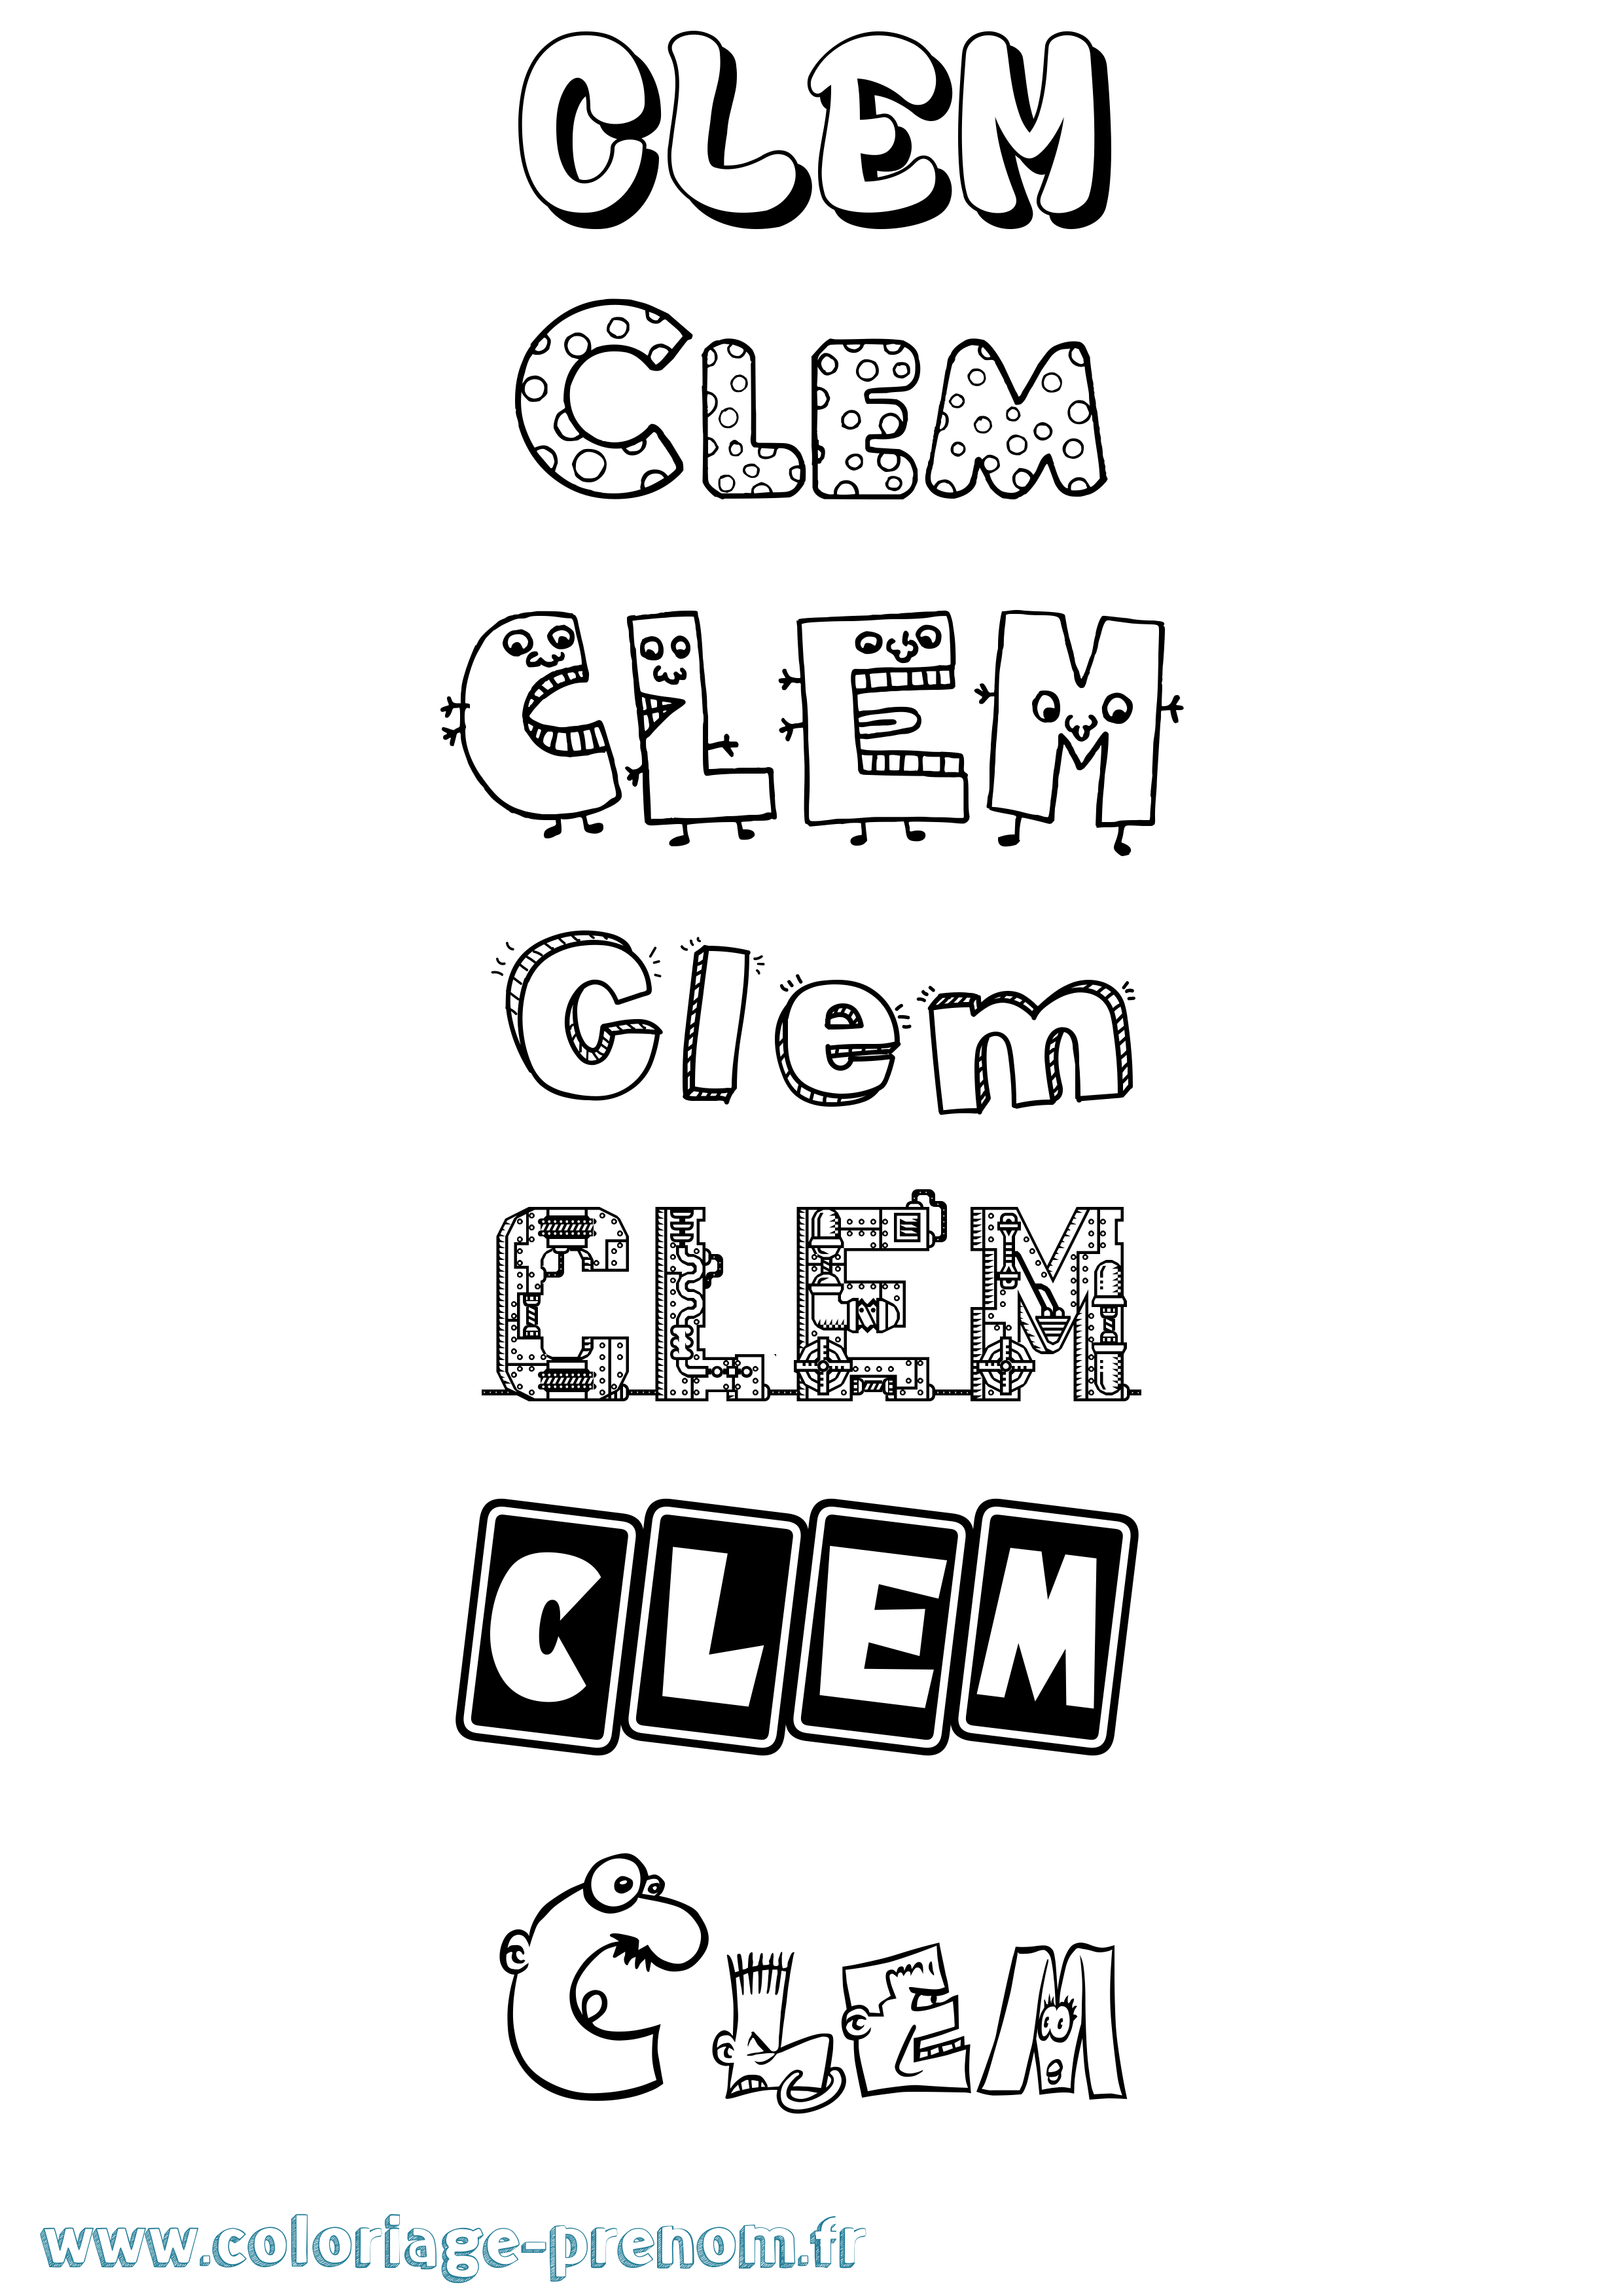 Coloriage prénom Clem Fun